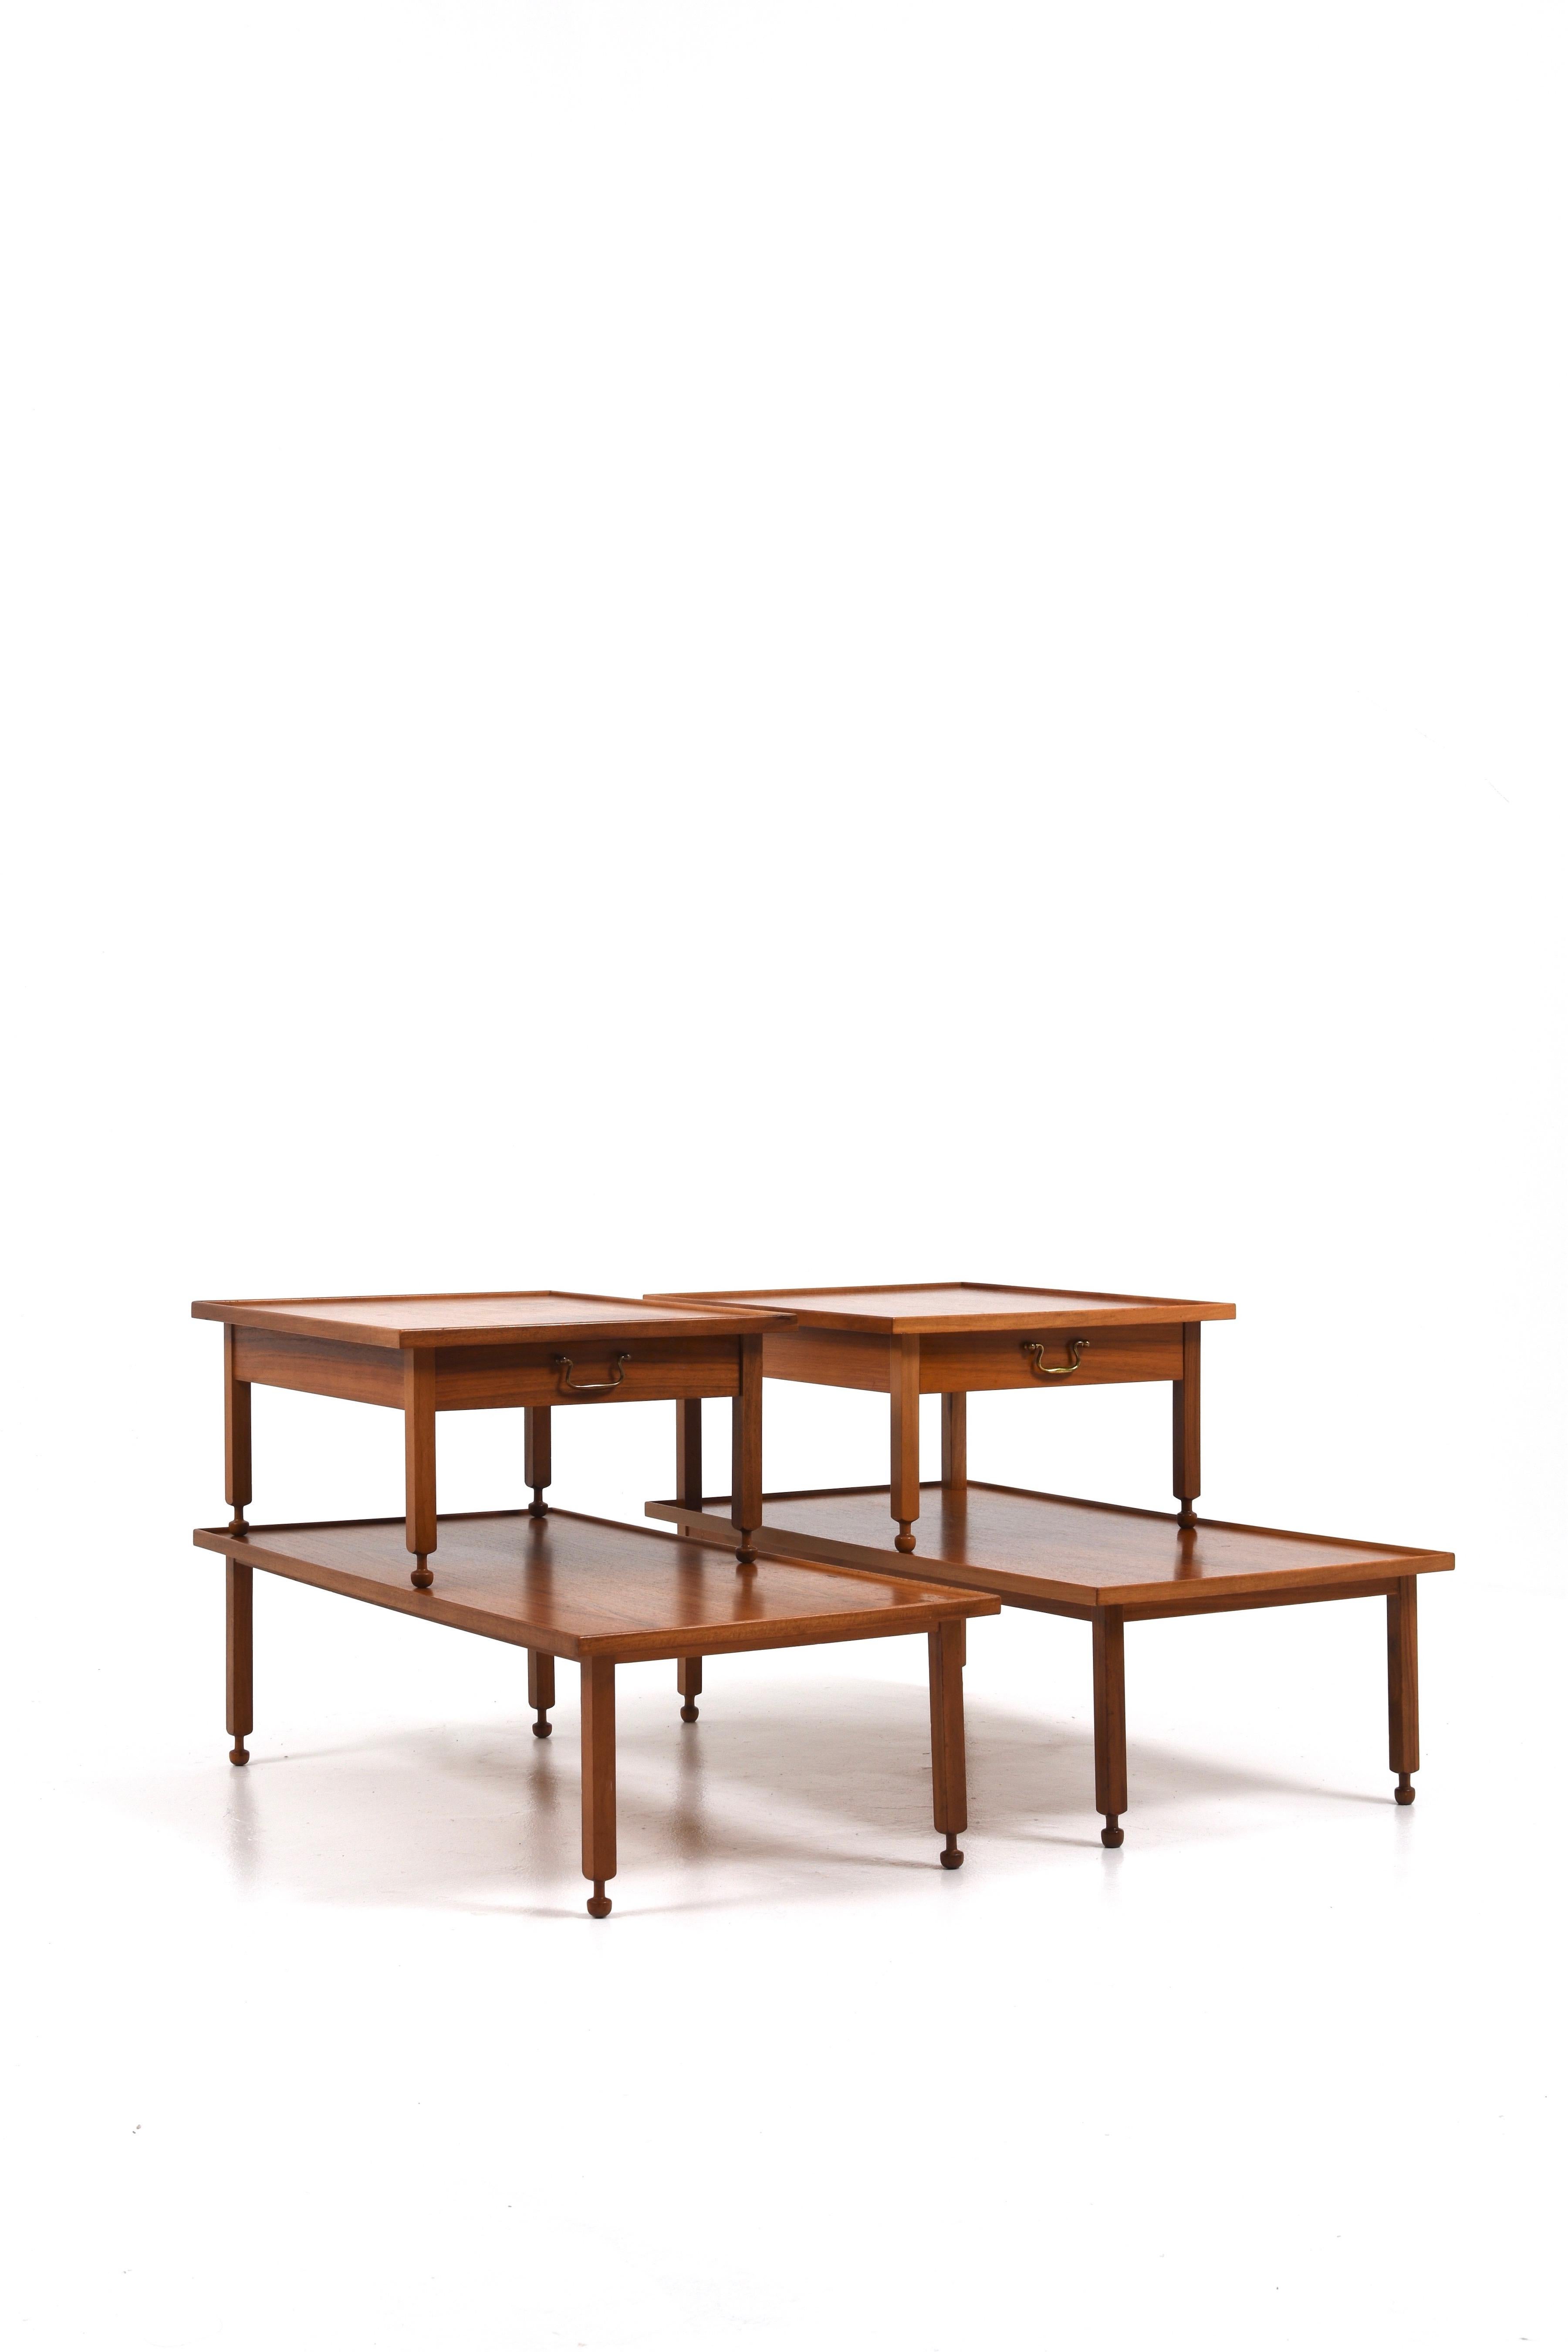 Die Side Tables von Josef Frank für Svenskt Tenn sind eine atemberaubende und ikonische Kollektion von Möbelstücken, die der berühmte Architekt und Designer Josef Frank in Zusammenarbeit mit Svenskt Tenn, einem renommierten schwedischen